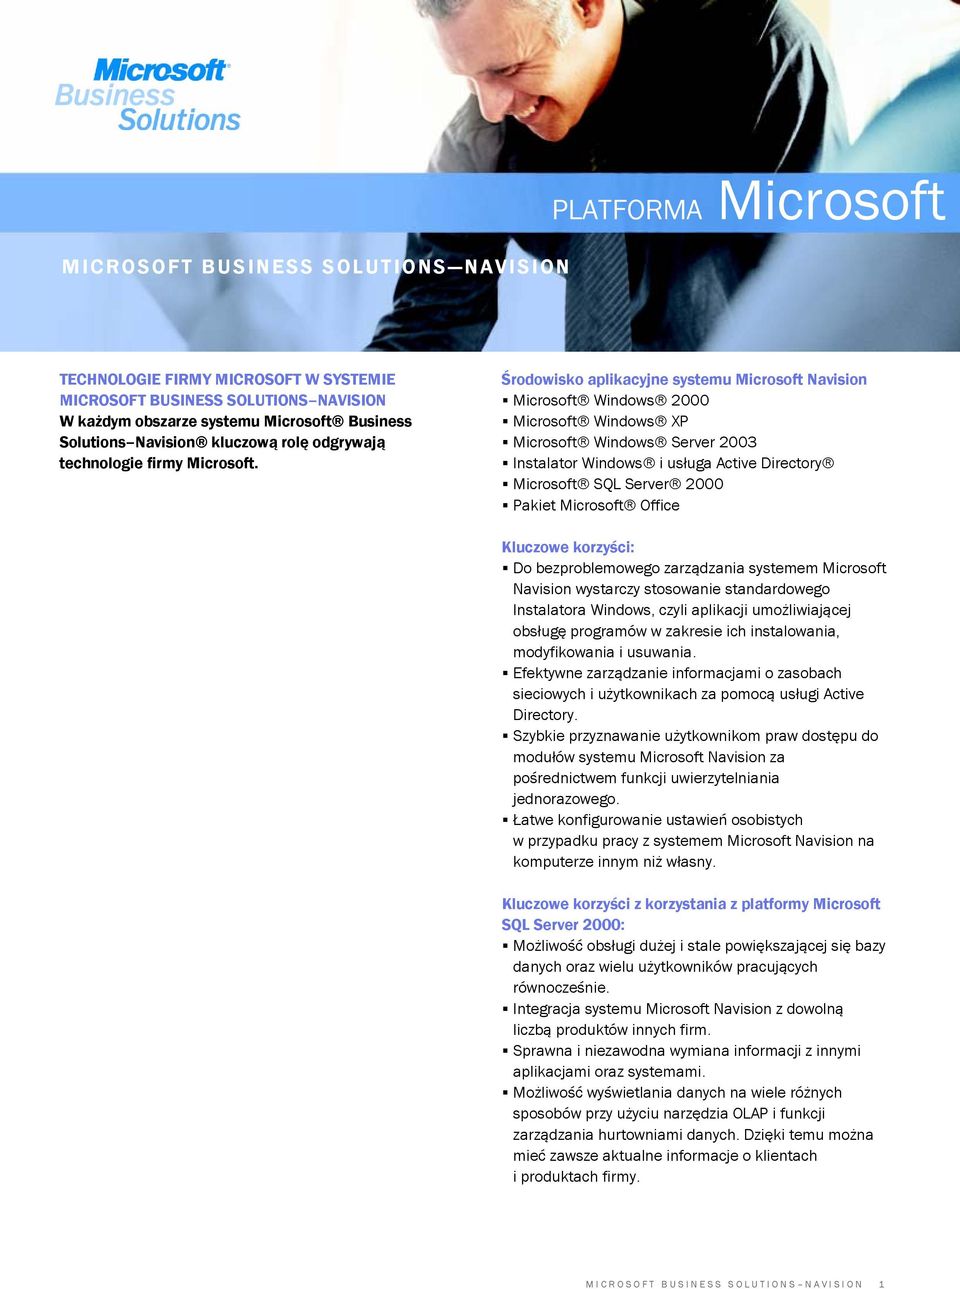 Środowisko aplikacyjne systemu Microsoft Navision Microsoft Windows 2000 Microsoft Windows XP Microsoft Windows Server 2003 Instalator Windows i usługa Active Directory Microsoft SQL Server 2000